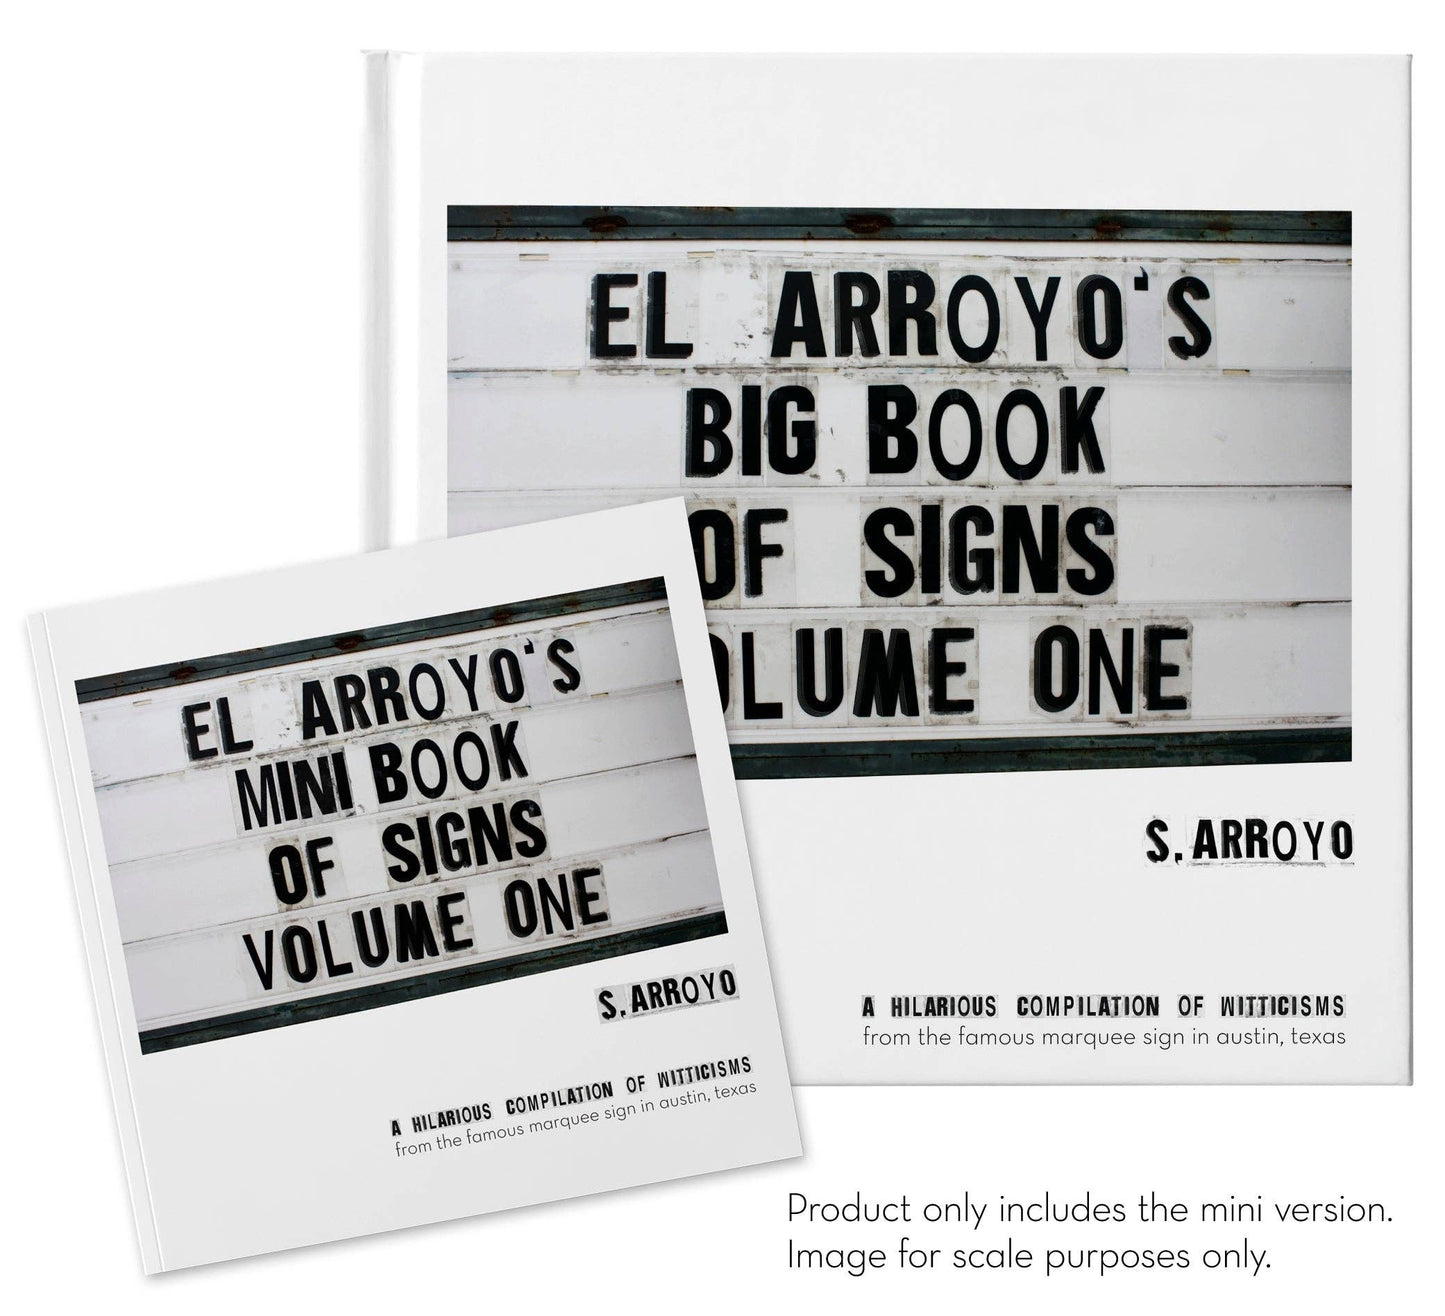 El Arroyo - El Arroyo's Mini Book of Signs Volume One